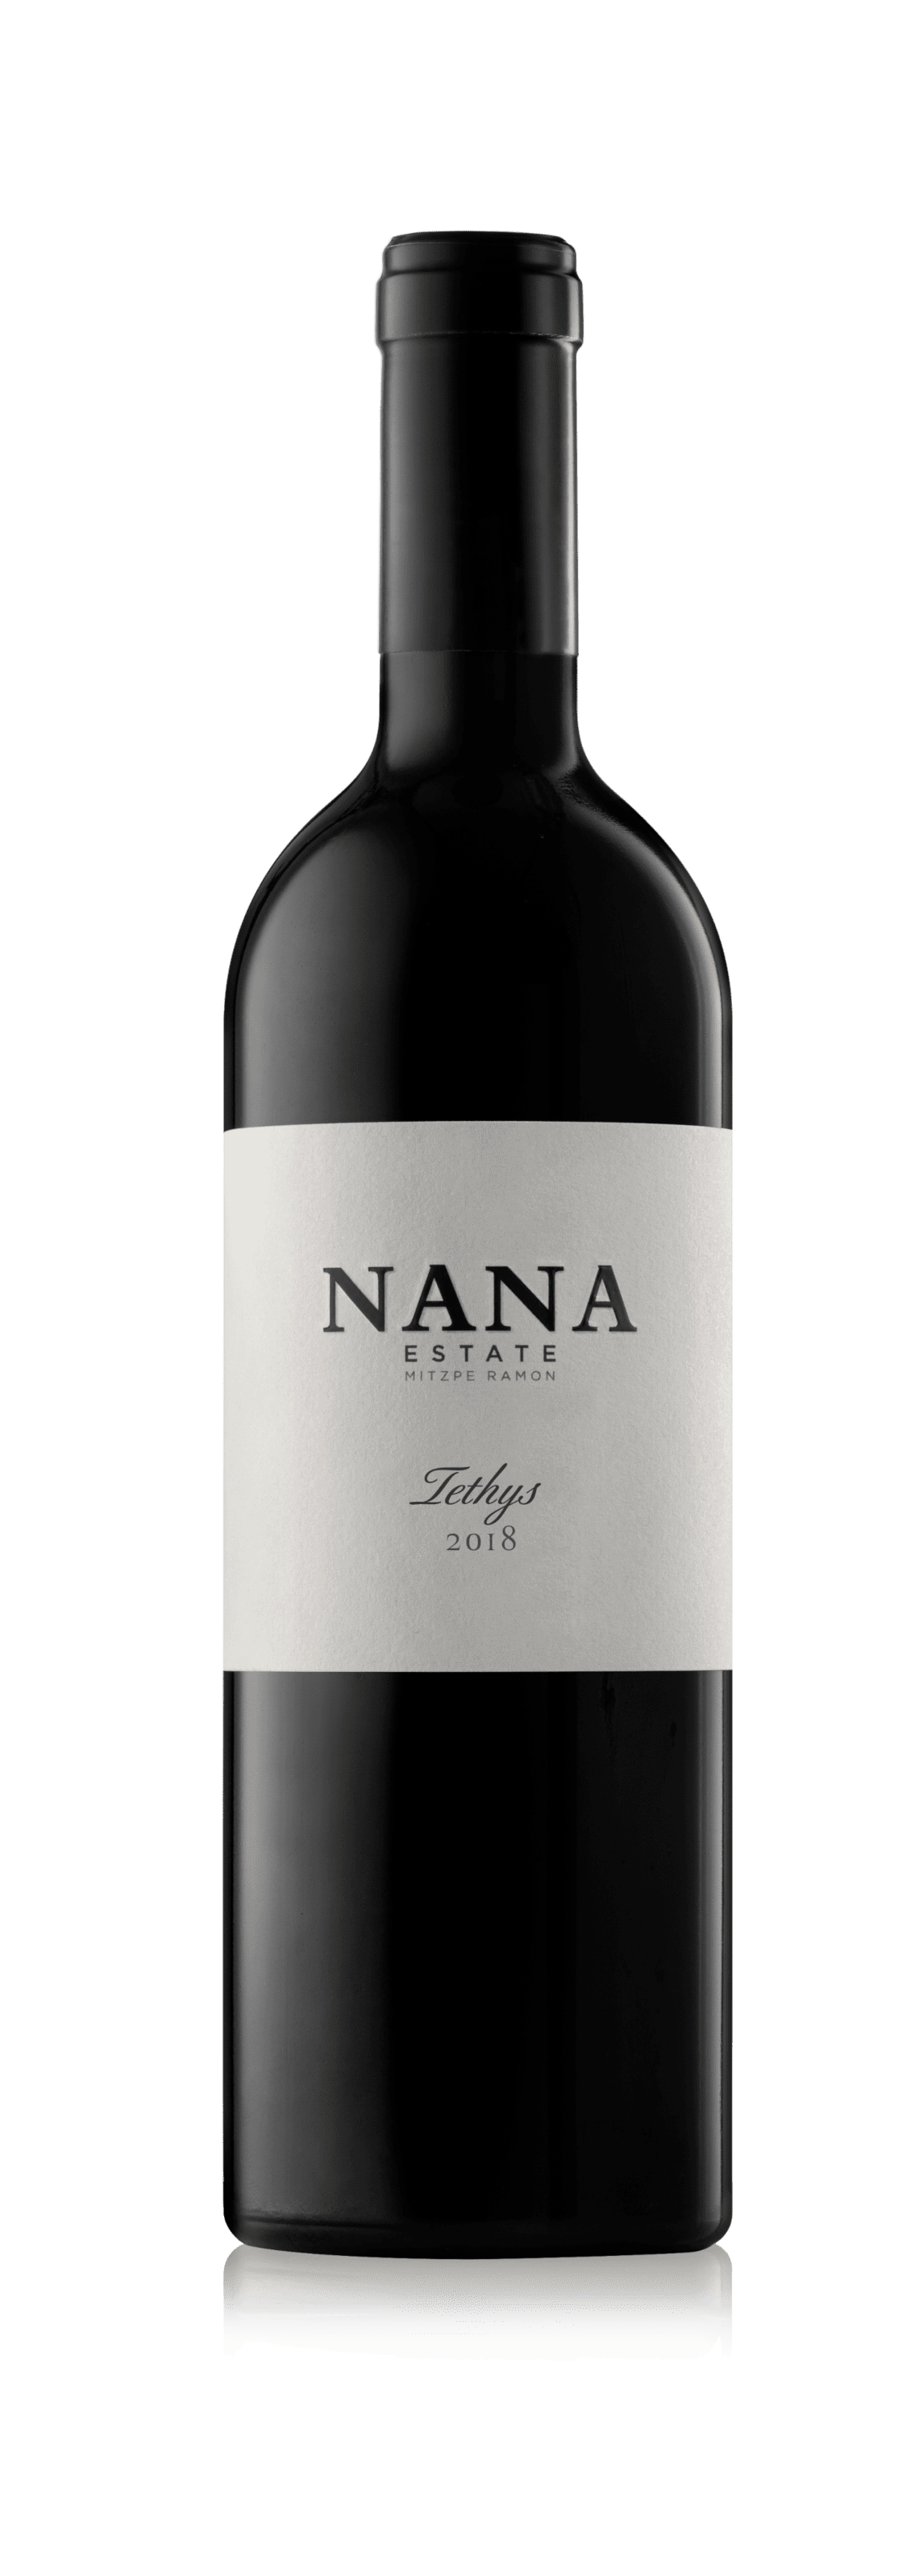 NANA_Tethys2018